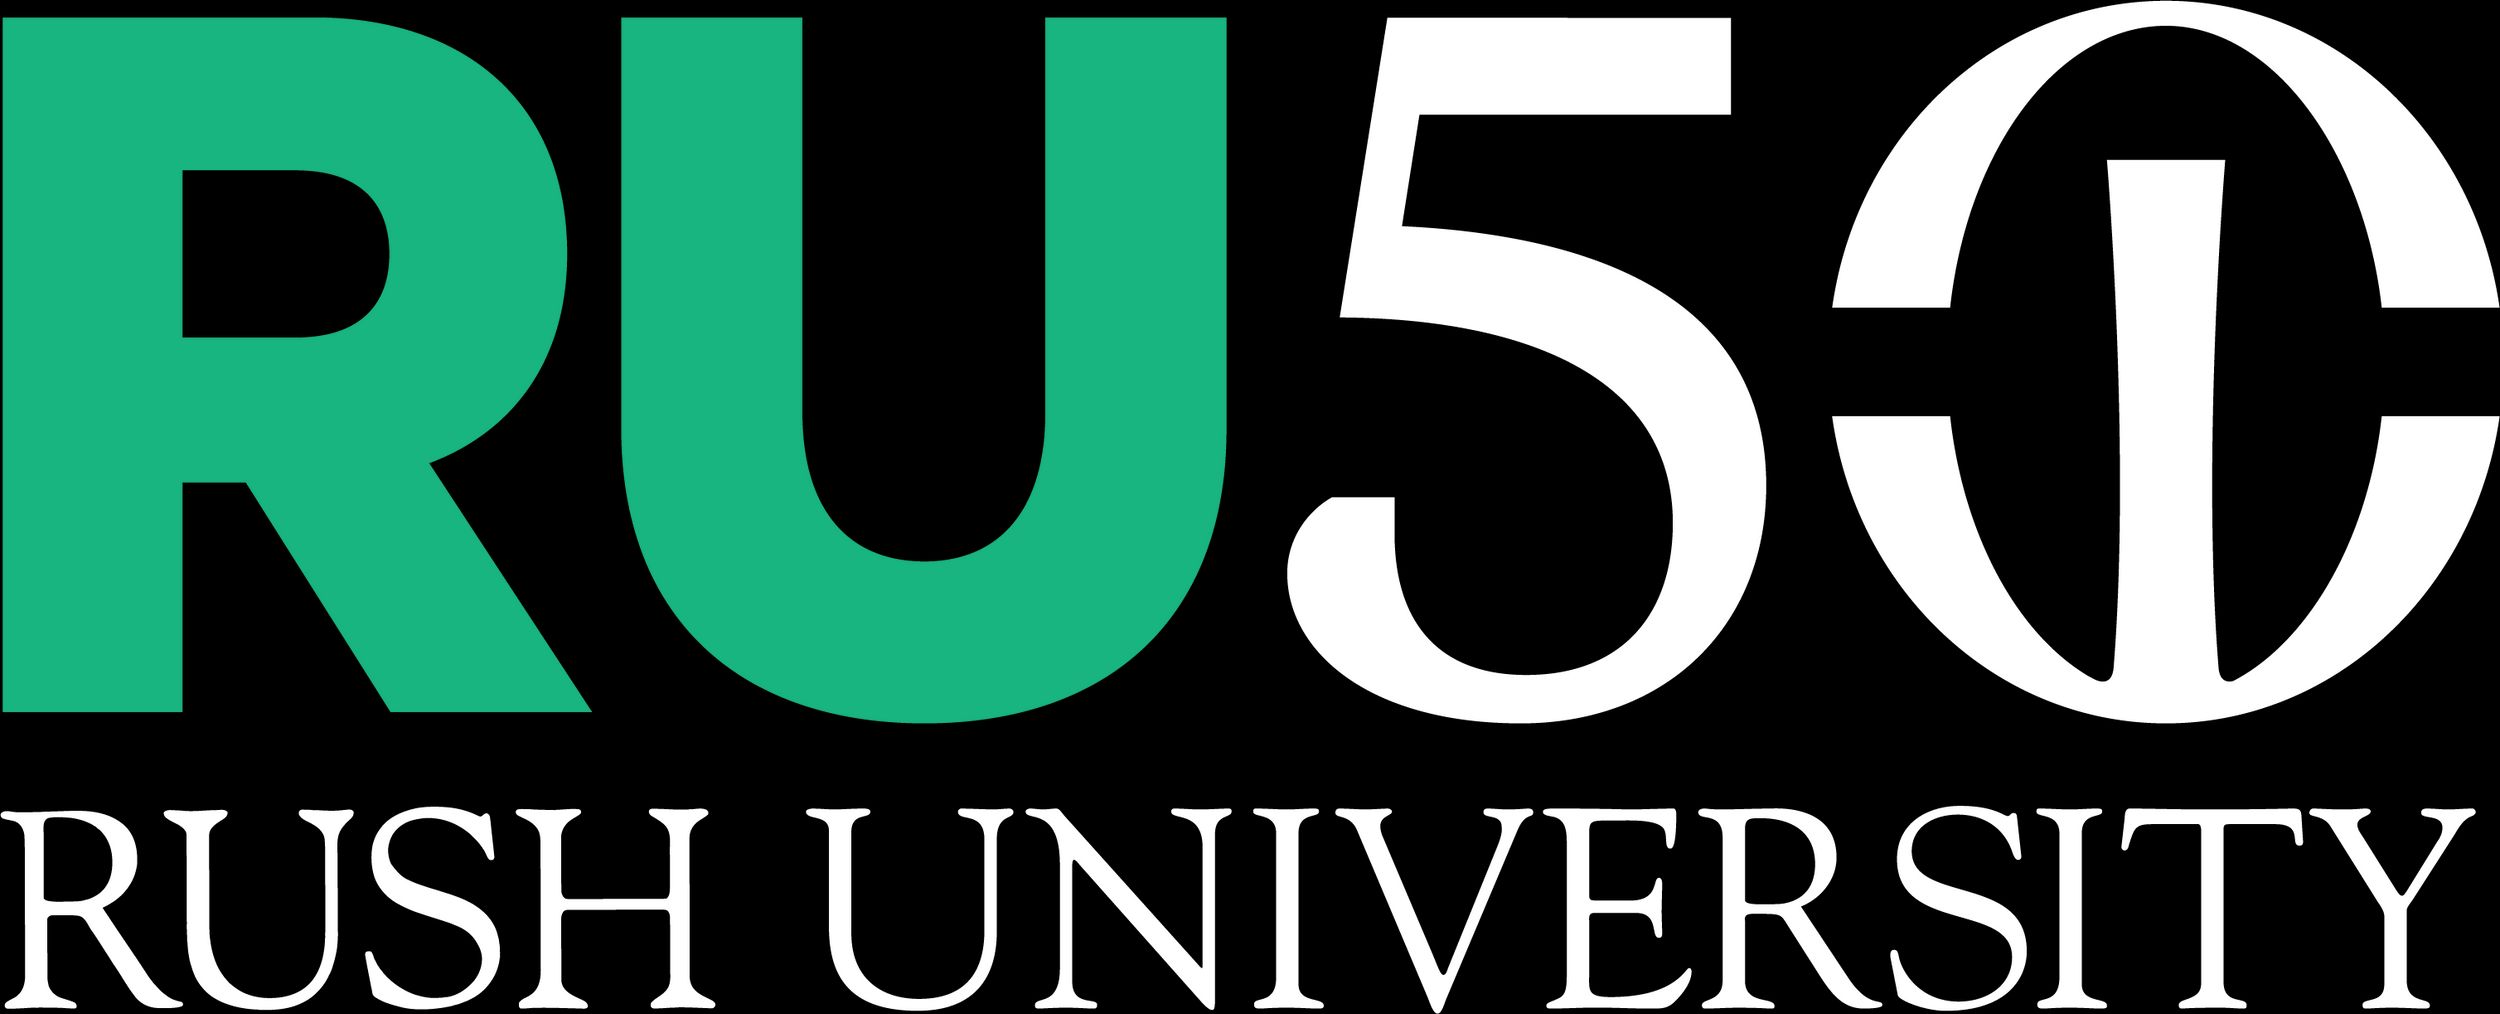 Rush University - 50th Anniversary